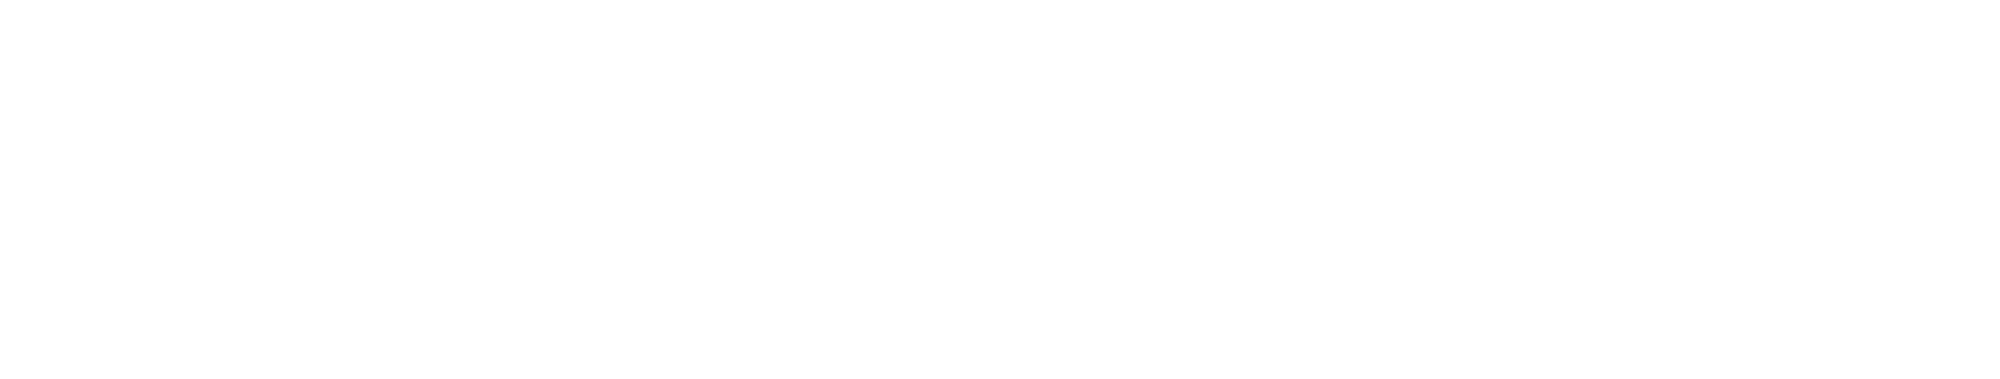 Hernandez Law Firm | Tulsa